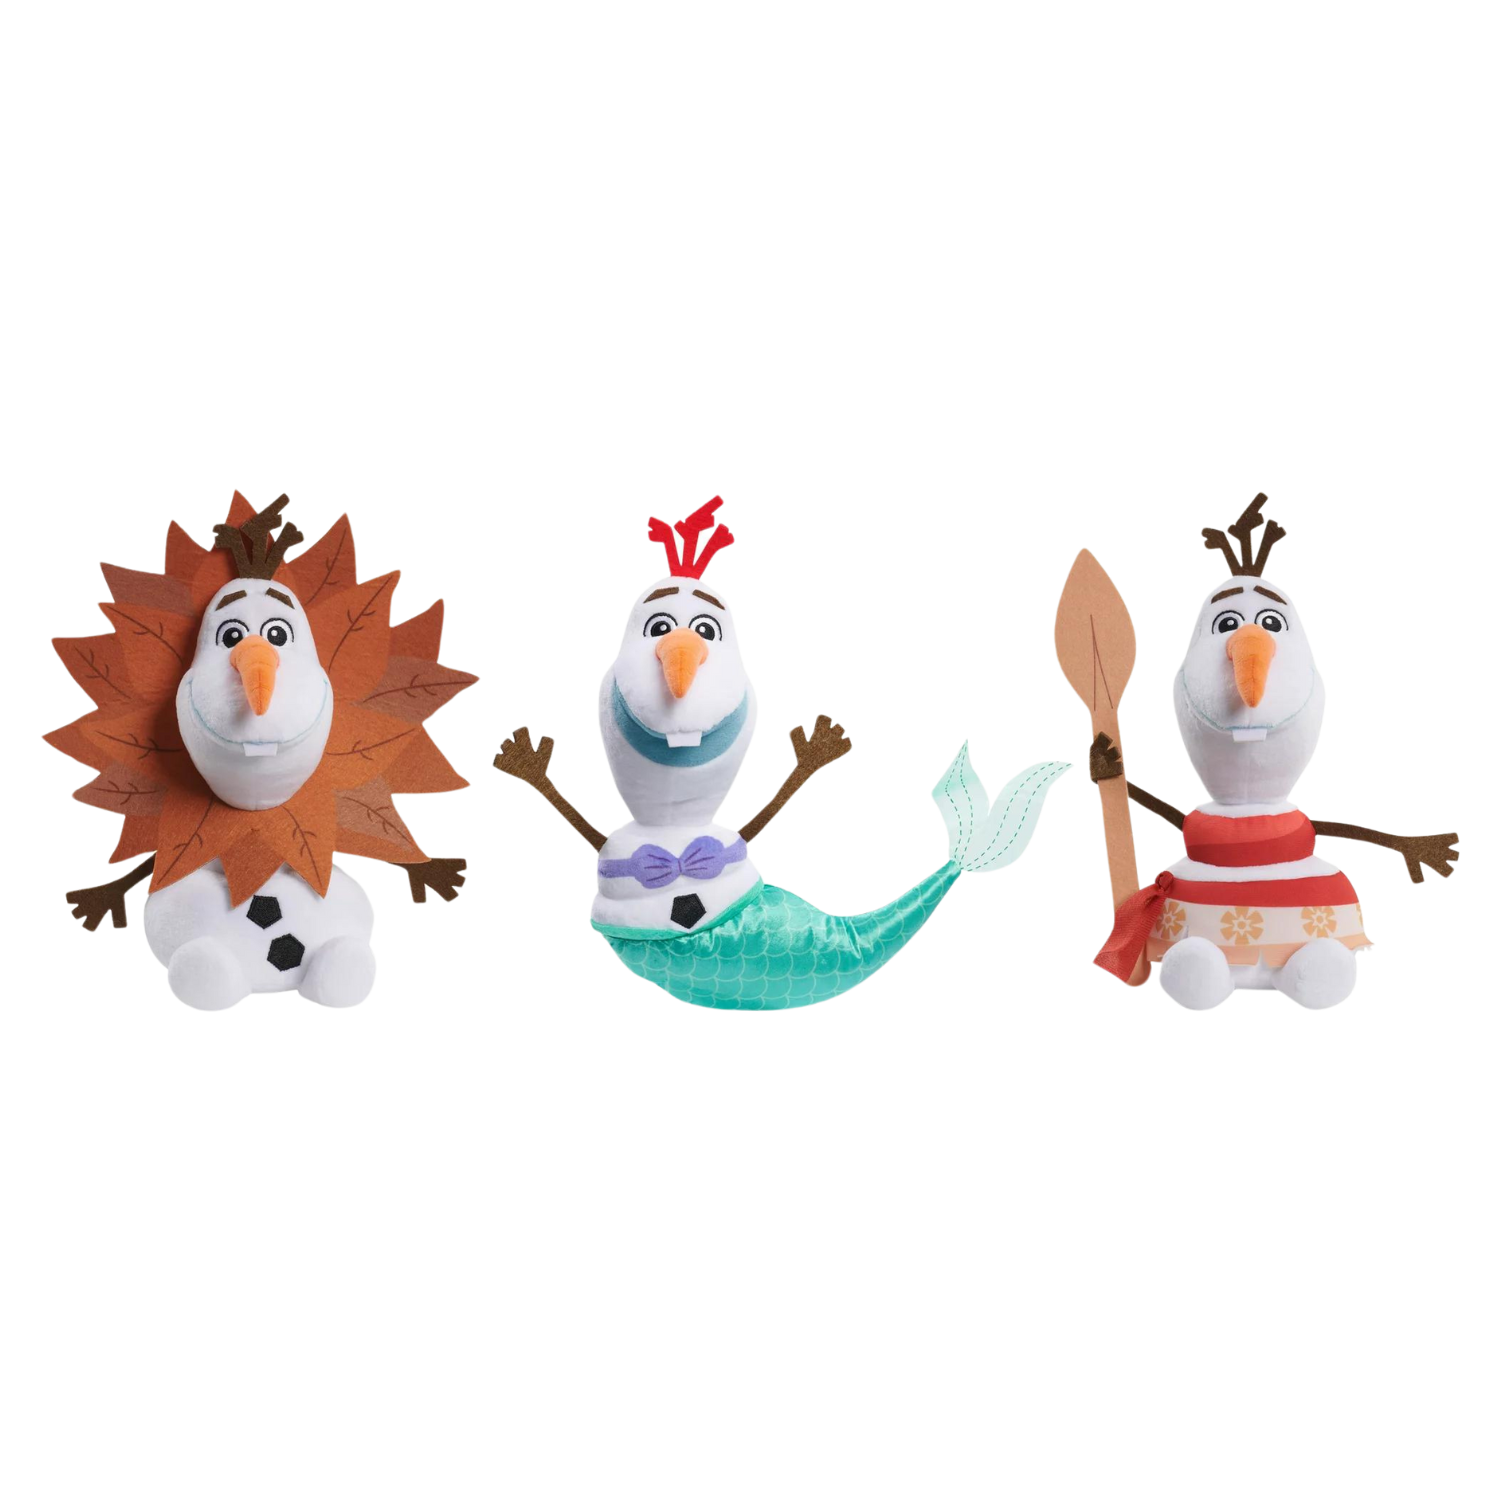 Questa immagine mostra tre bambole di Olaf il pupazzo di neve di Frozen vestite da Simba, la Sirenetta e Moana.